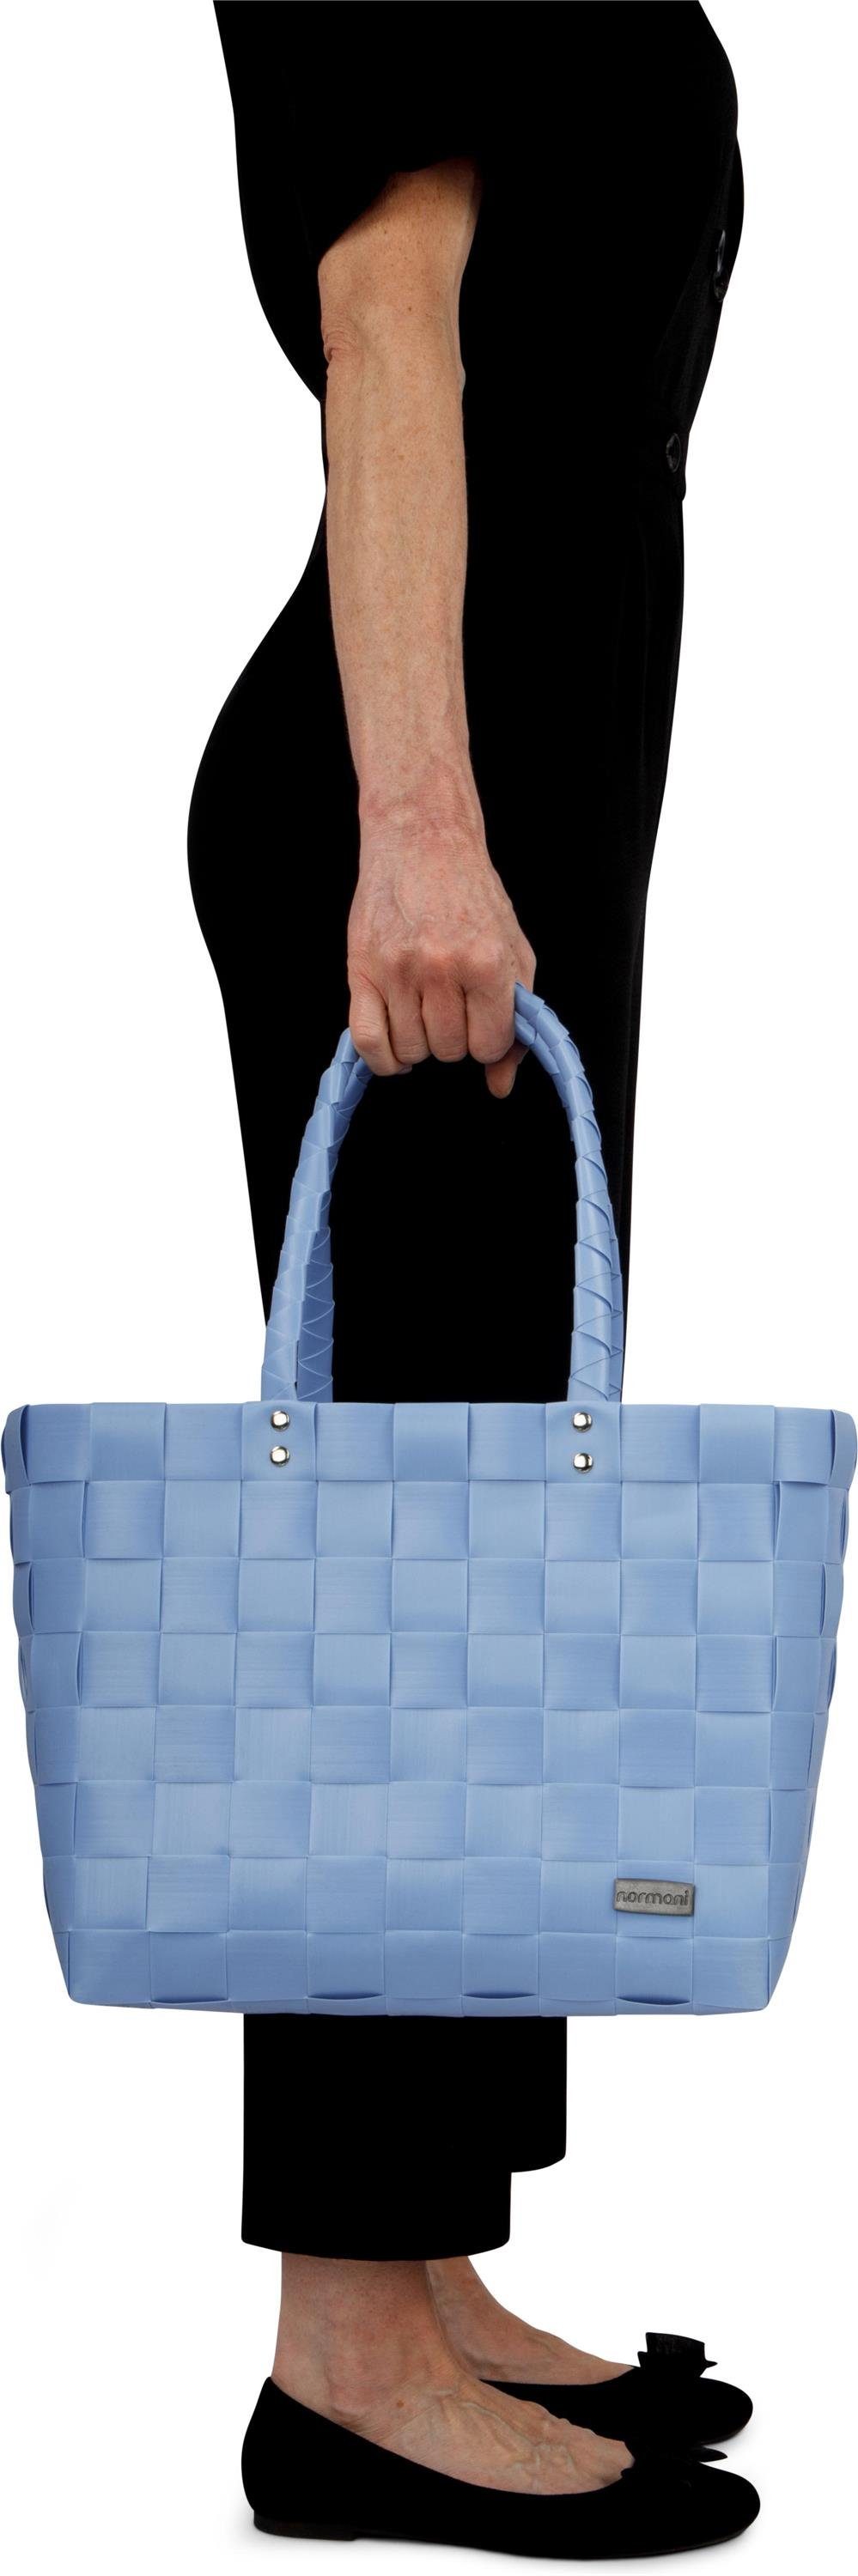 normani Material Light Einkaufstasche Blue aus aus Kunststoff, Flechtkorb l, pflegeleichtem 20 Einkaufskorb Einkaufskorb